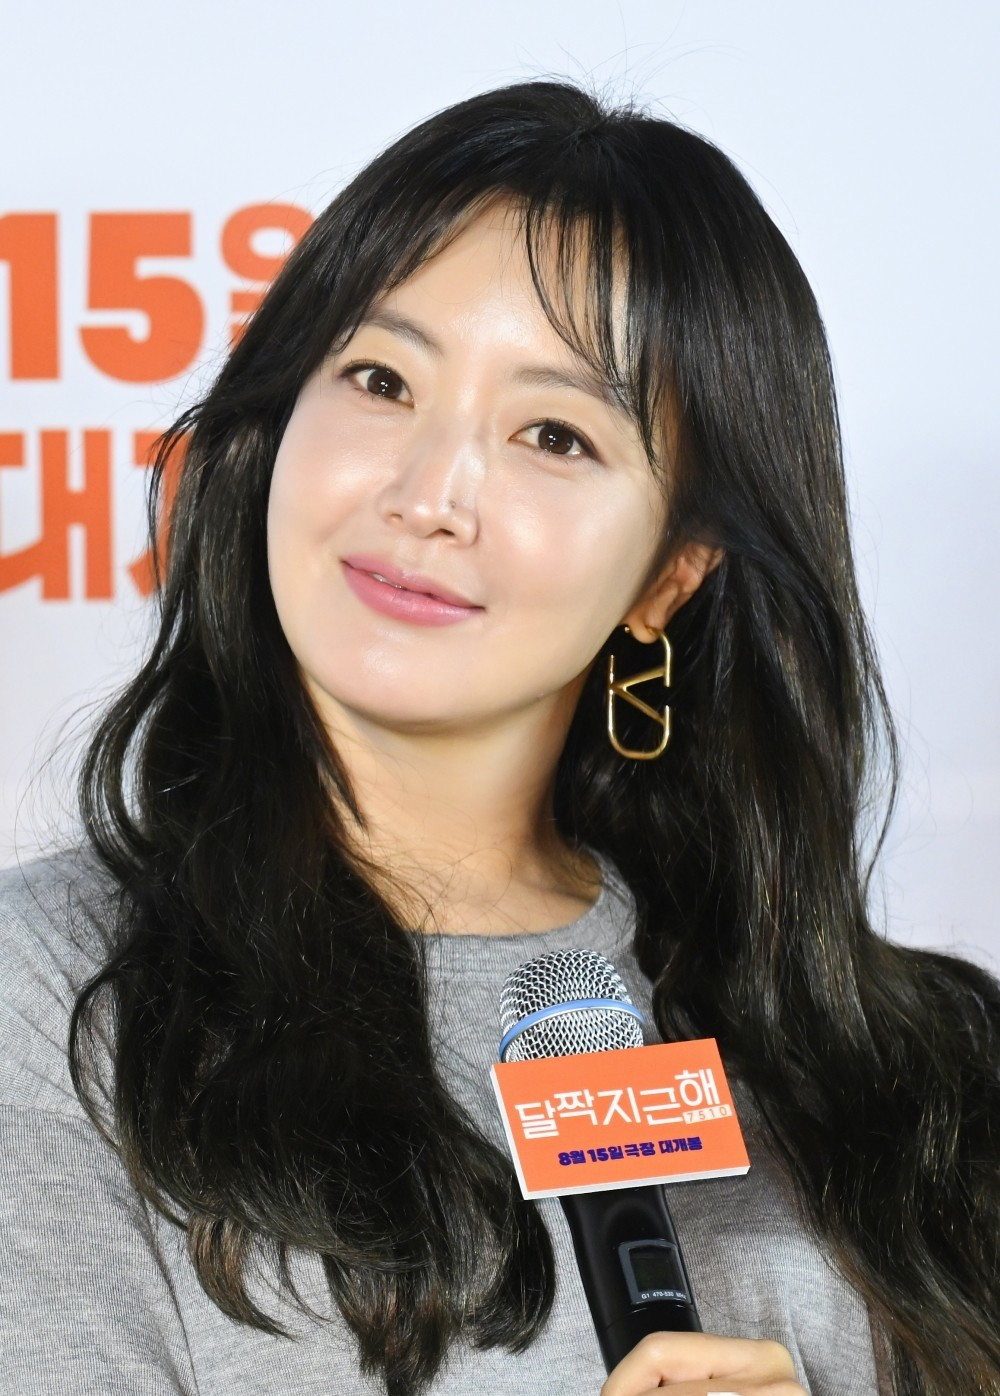 Kim Hee Sun 46 tuổi vẫn có da căng bóng, ít lão hóa: Bí quyết đến từ vật bất ly thân! - Ảnh 1.